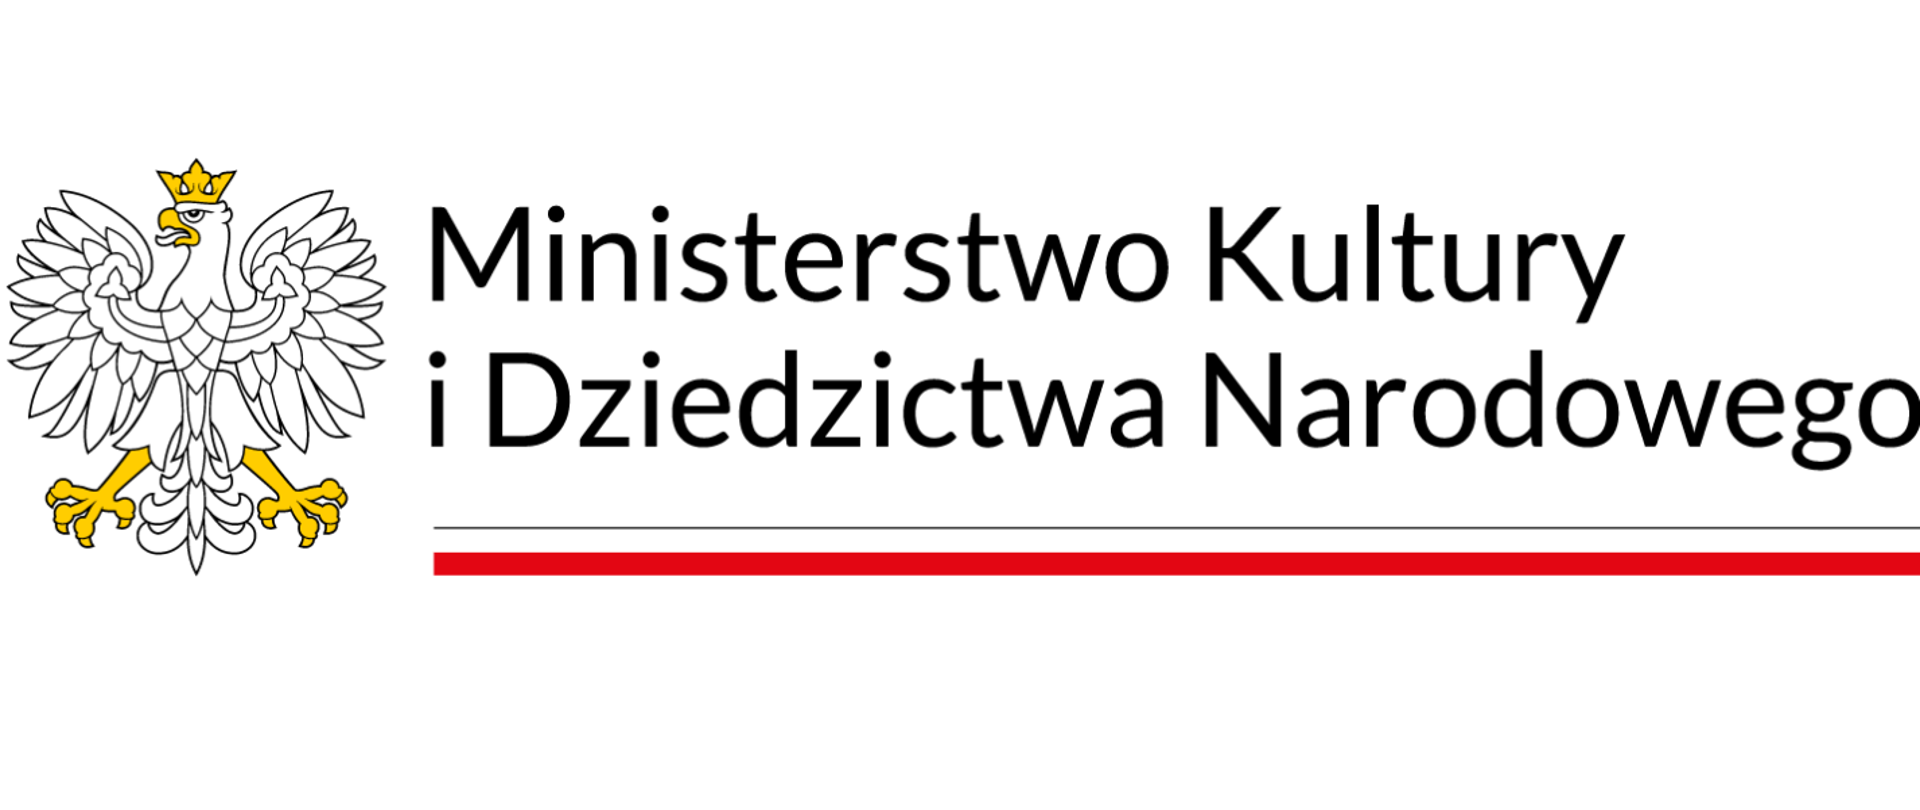 Logotyp MKiDN z białym orłem w złotej koronie z lewej strony. Z prawej strony napis: Ministerstwo Kultury i Dziedzictwa Narodowego.